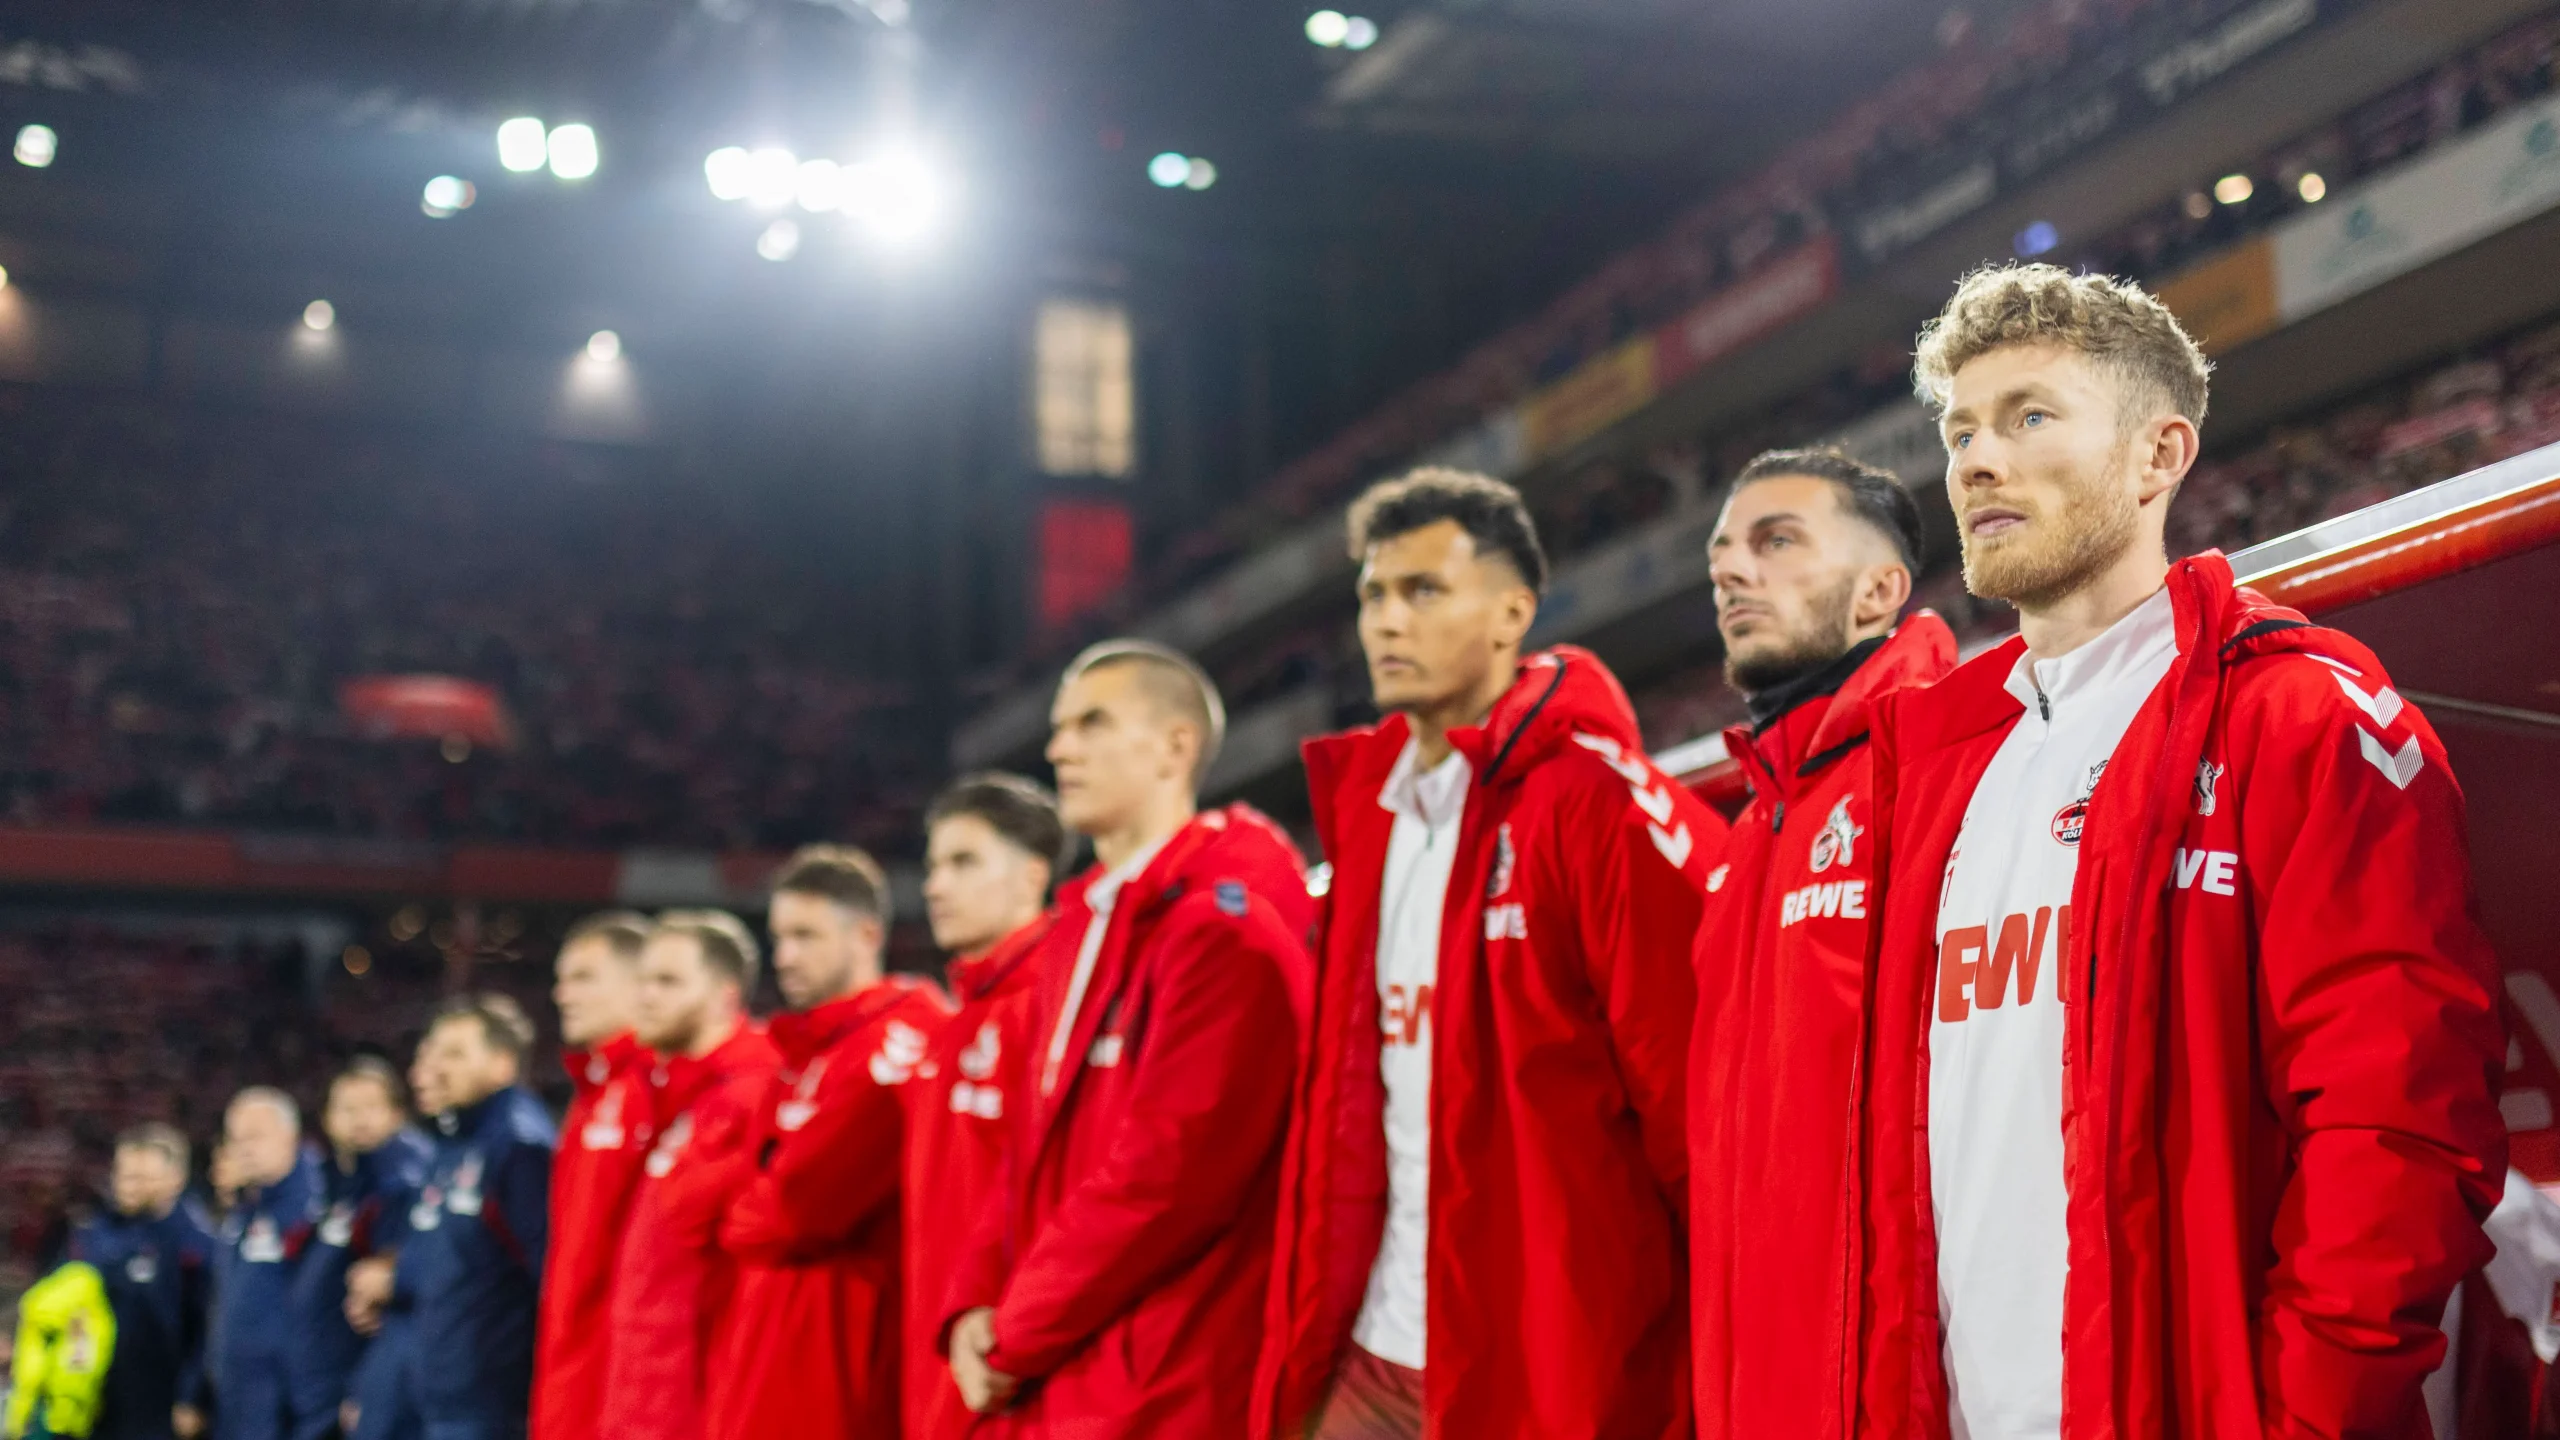 “Es ist alles okay”: Traurige Premiere für FC-Kapitän